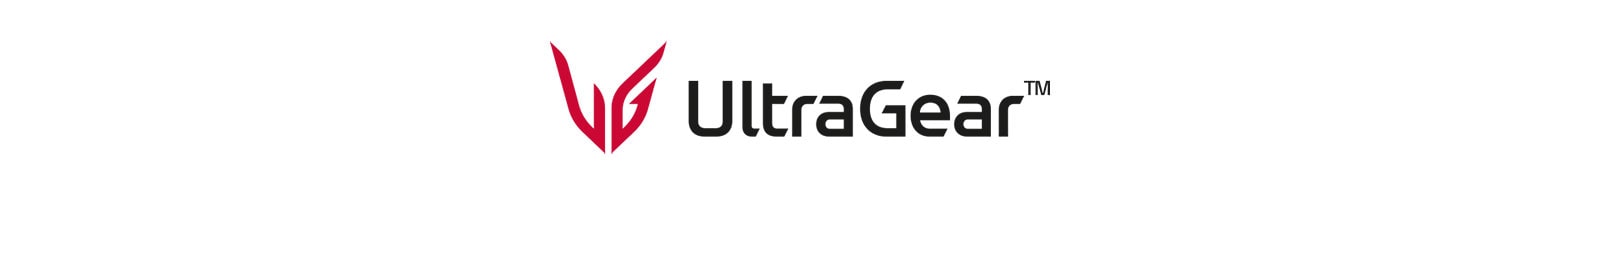 Logo UltraGear™.